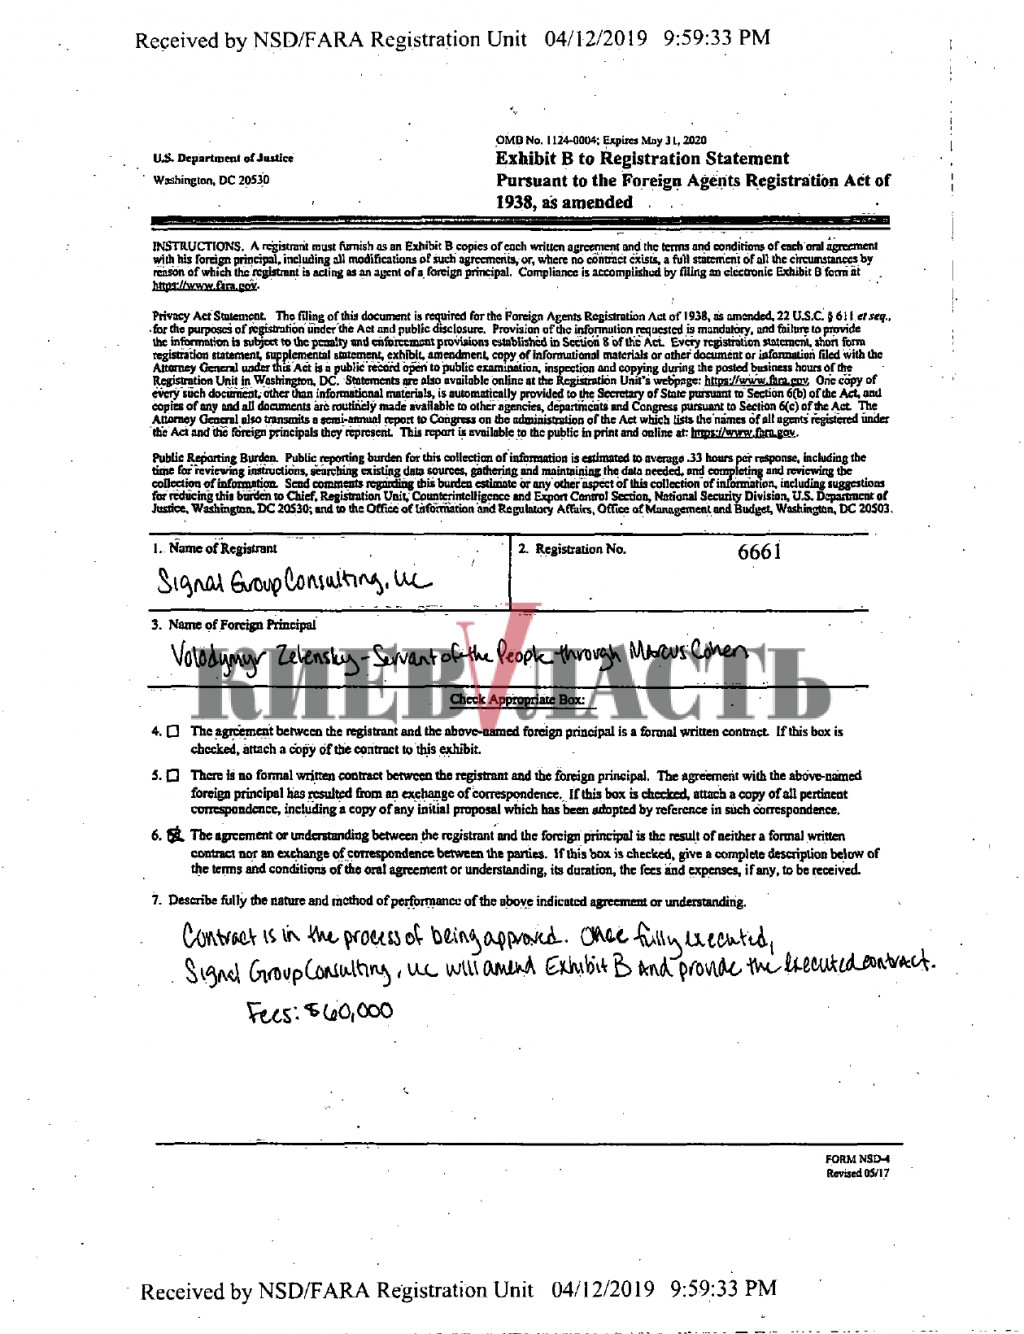 В команде Зеленского пытаются опровергнуть связь с Дубиной и наличие контракта с американскими лоббистами (документ)